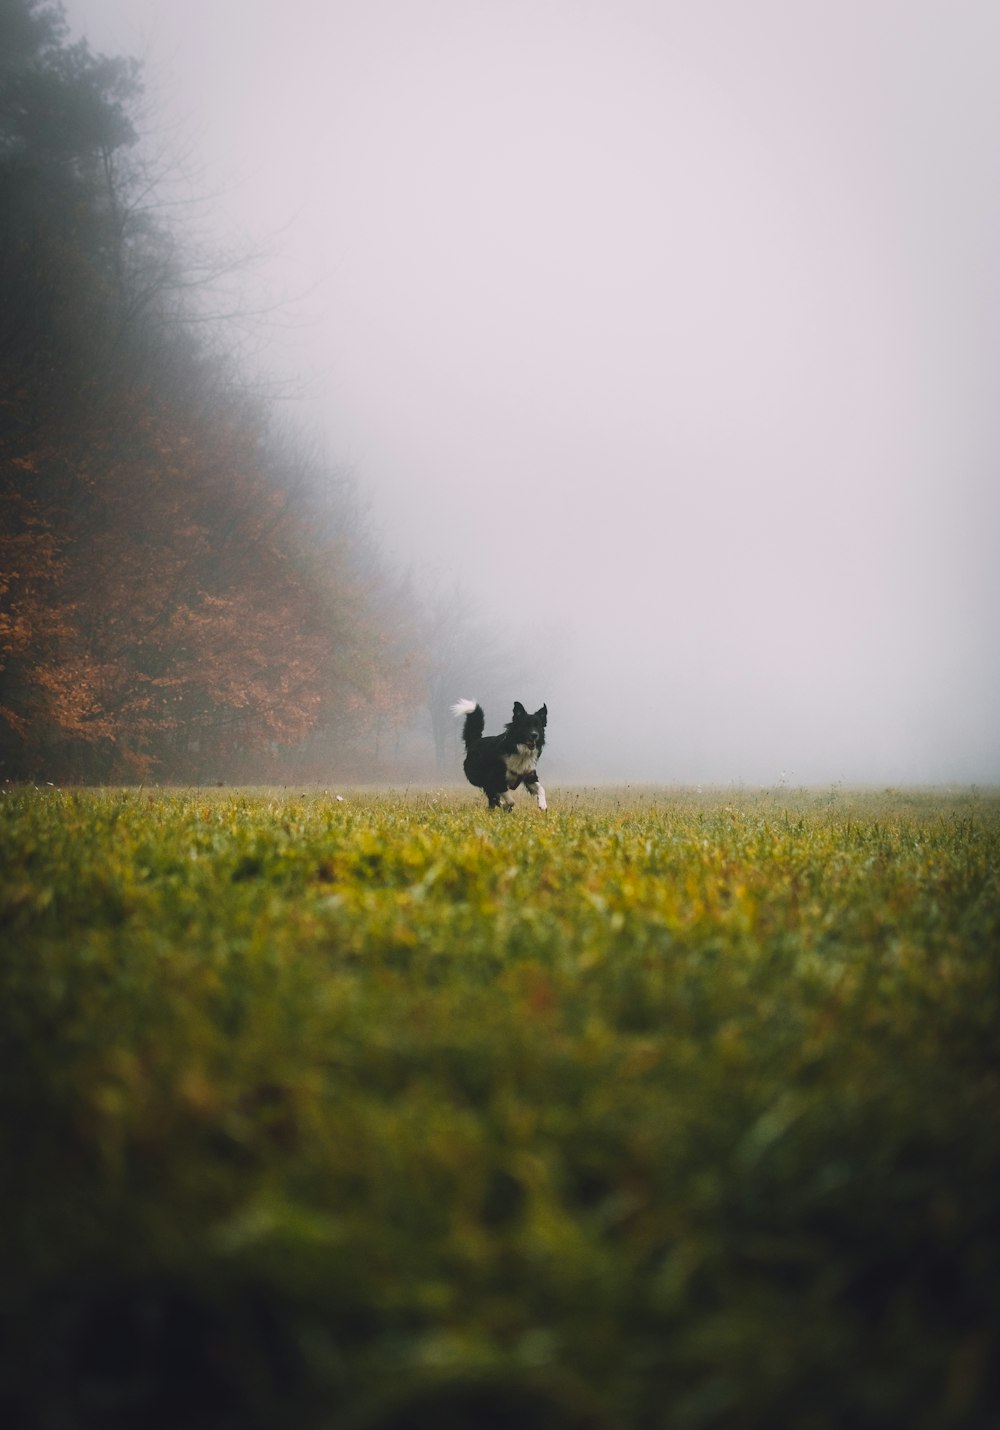 a dog running through a foggy field